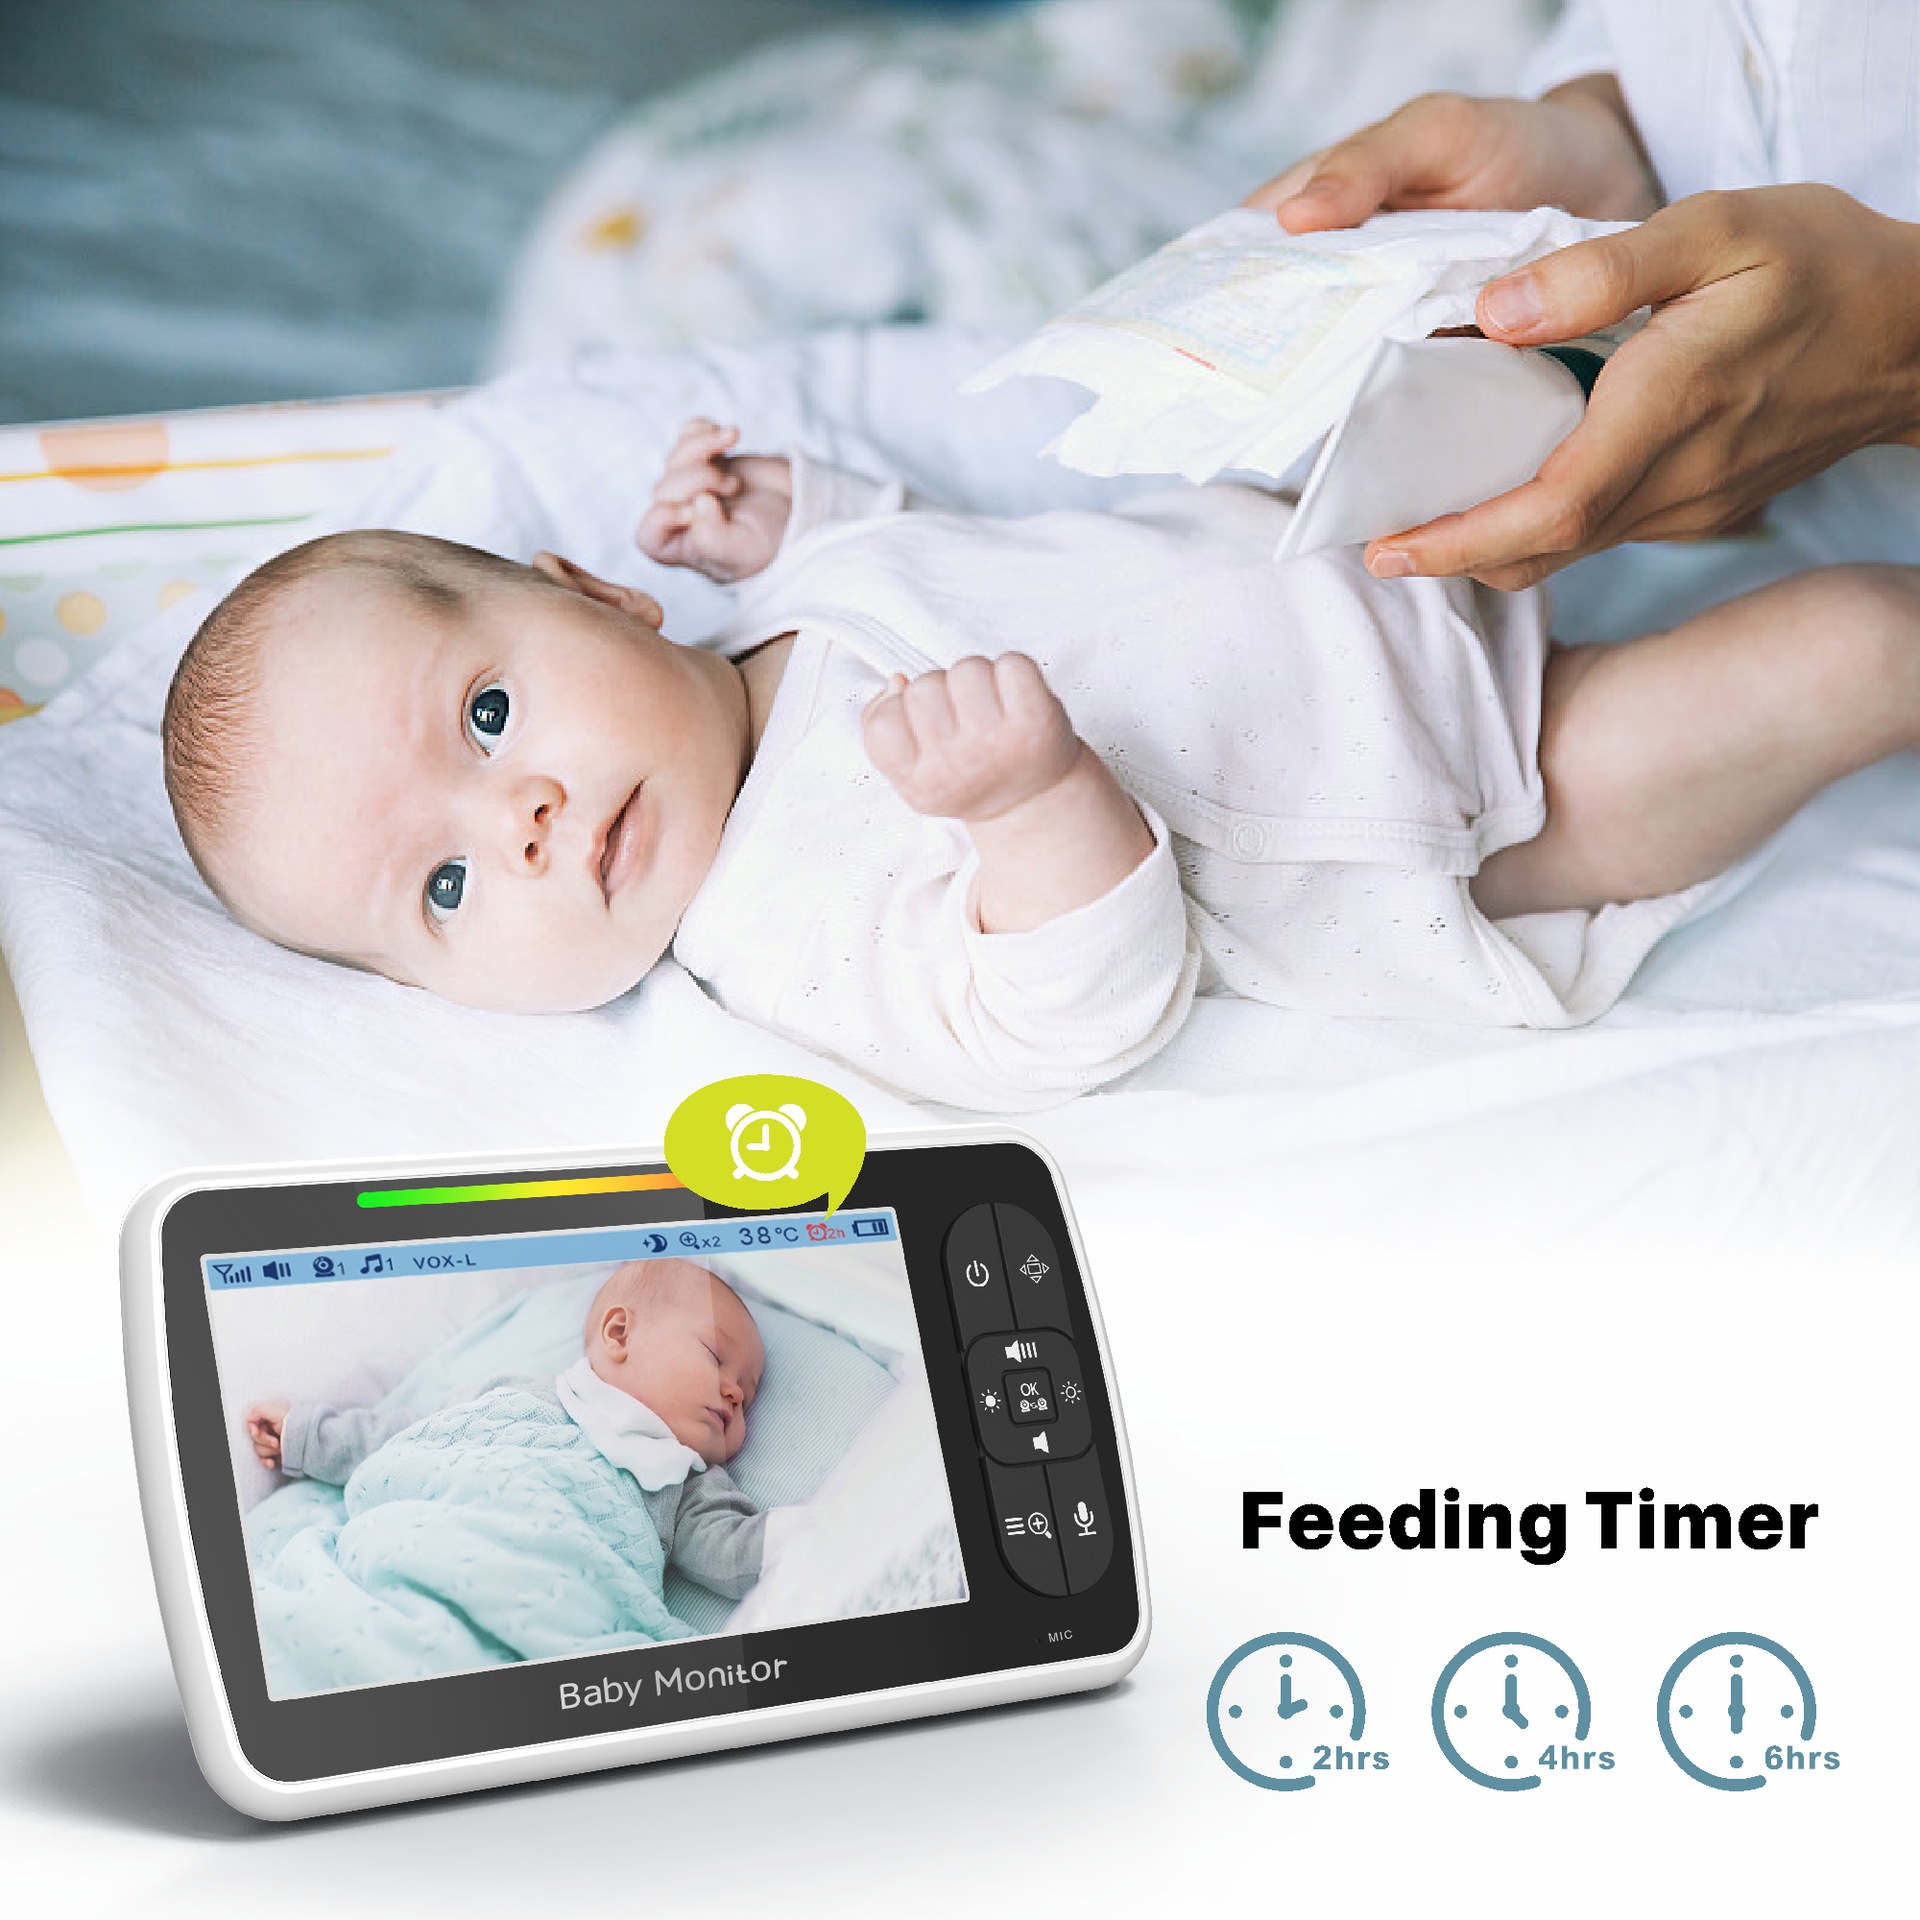 Máy báo khóc Baby Monitor Pro SM650 góc xem 360 với độ phân giải cao âm thanh nét